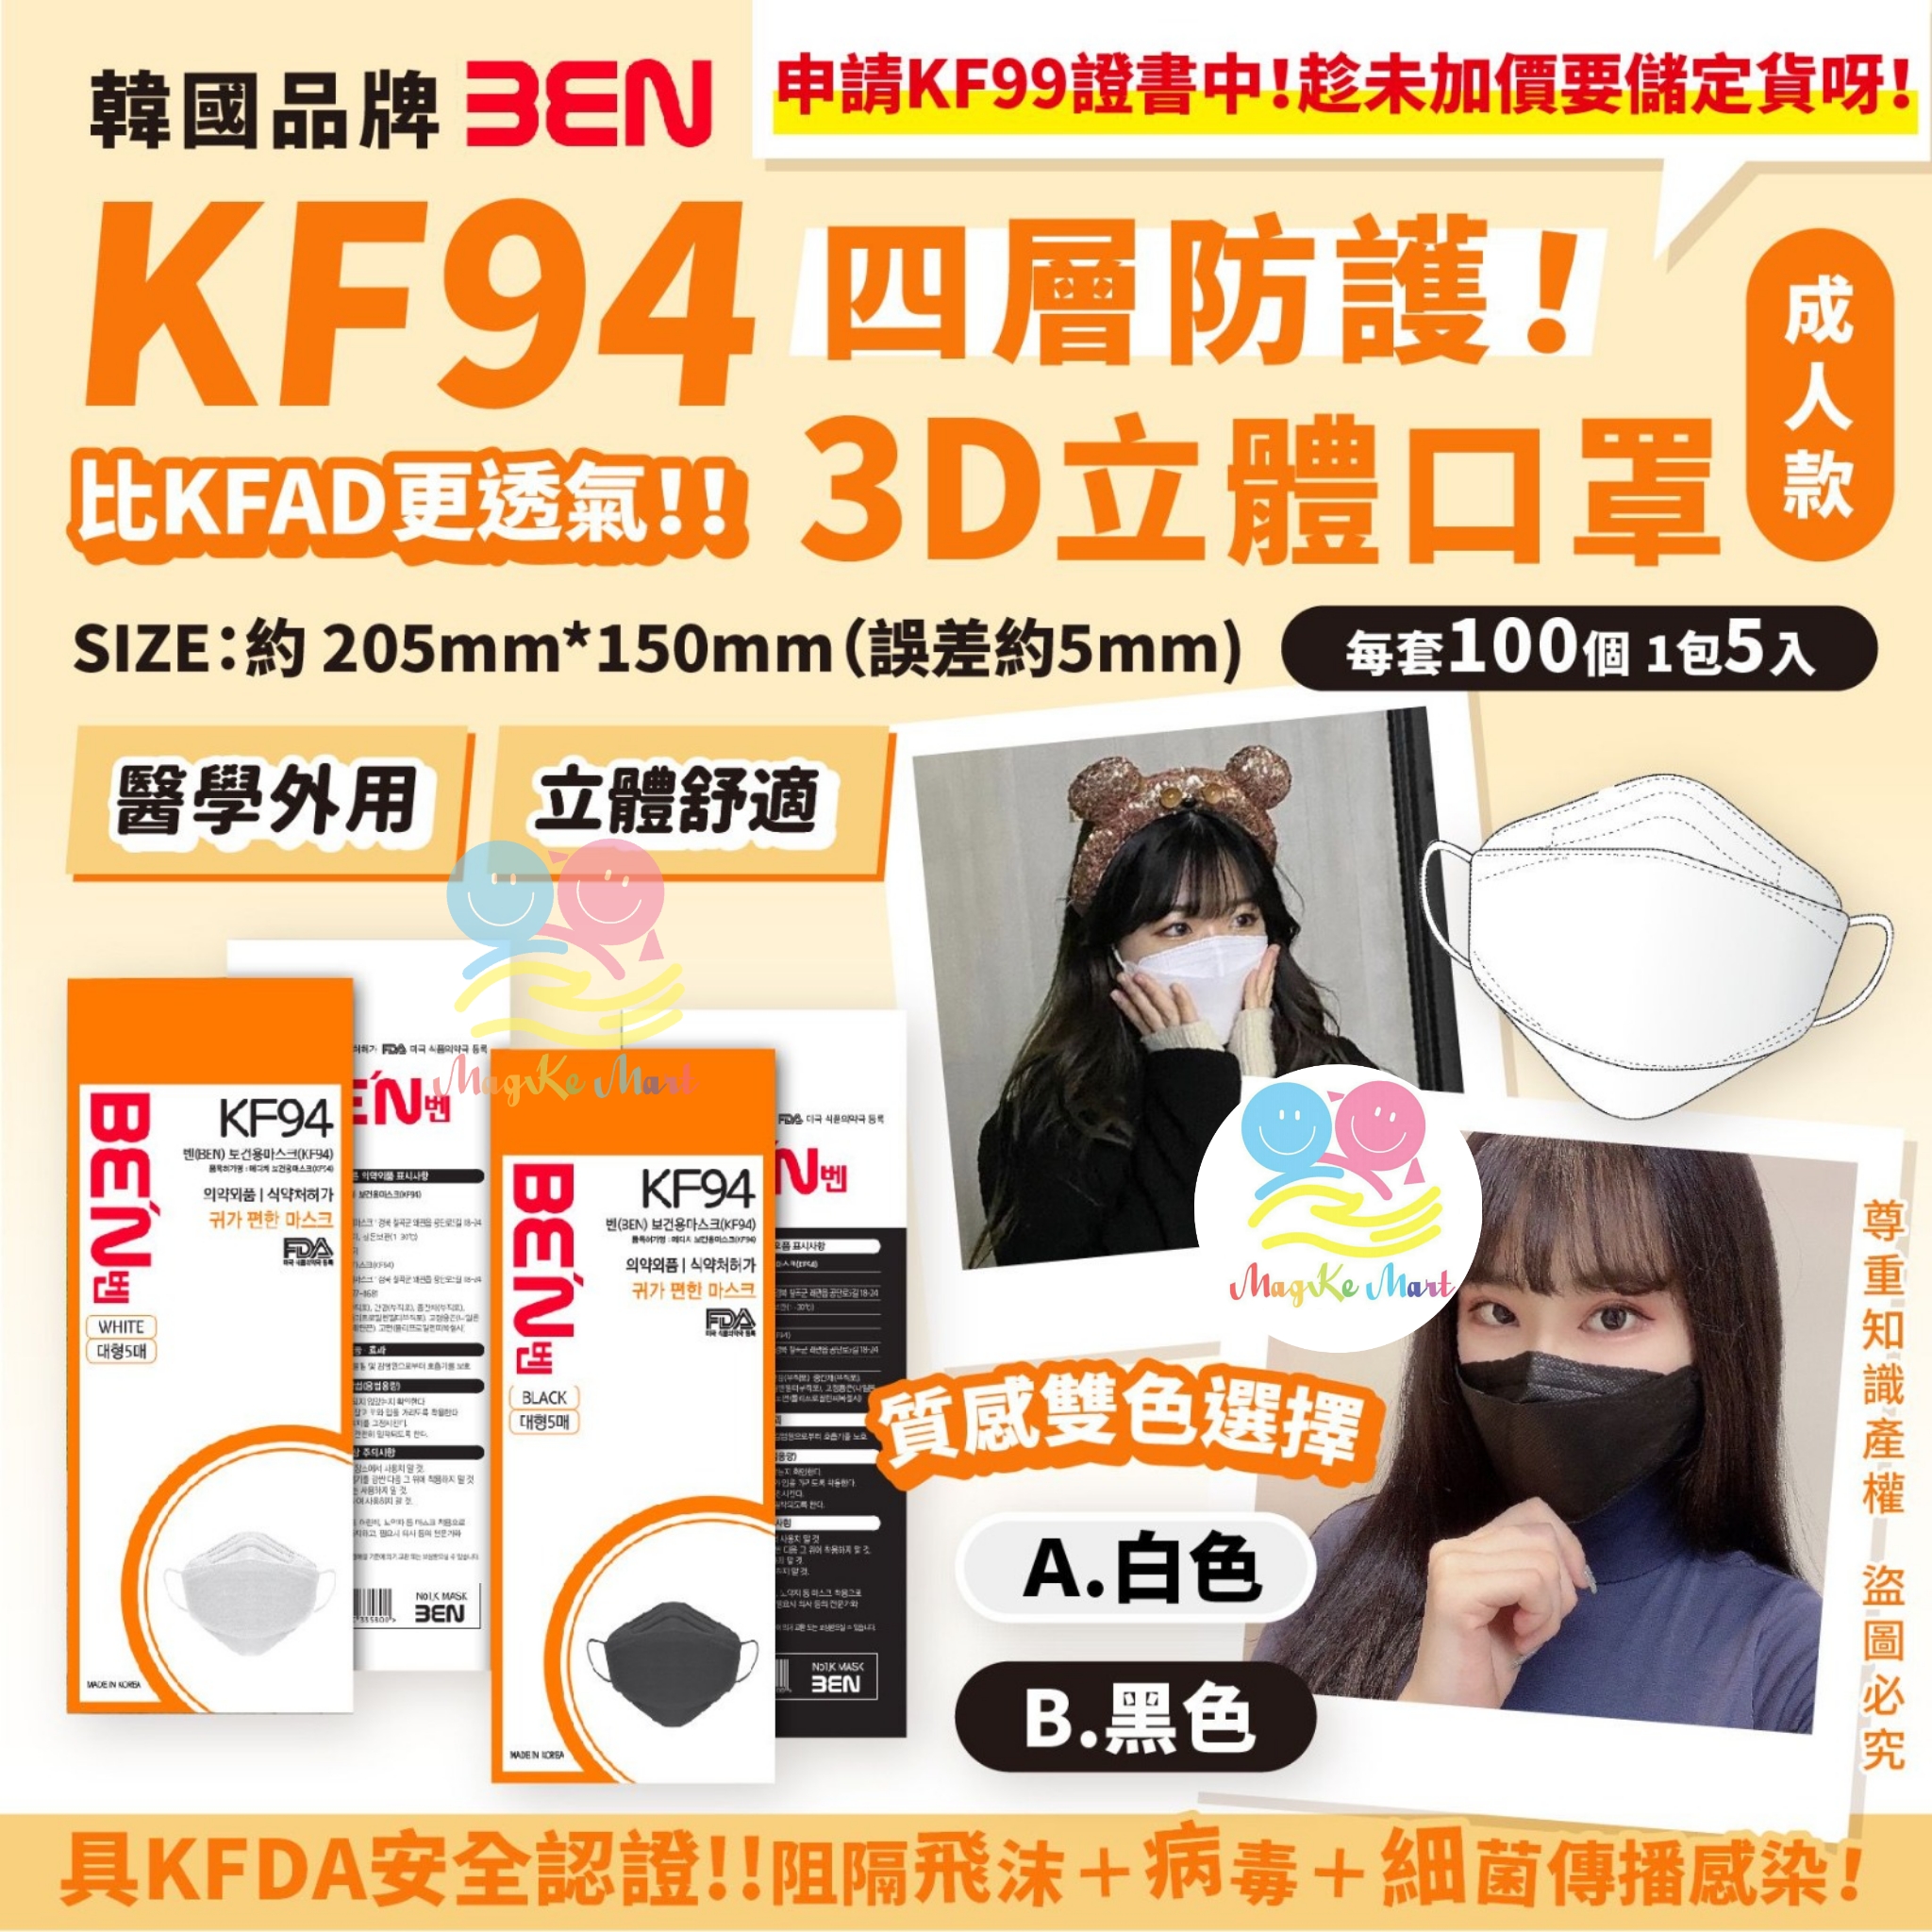 韓國 Ben KF94 四層防護3D立體成人口罩(1套100個)(非獨立包裝)